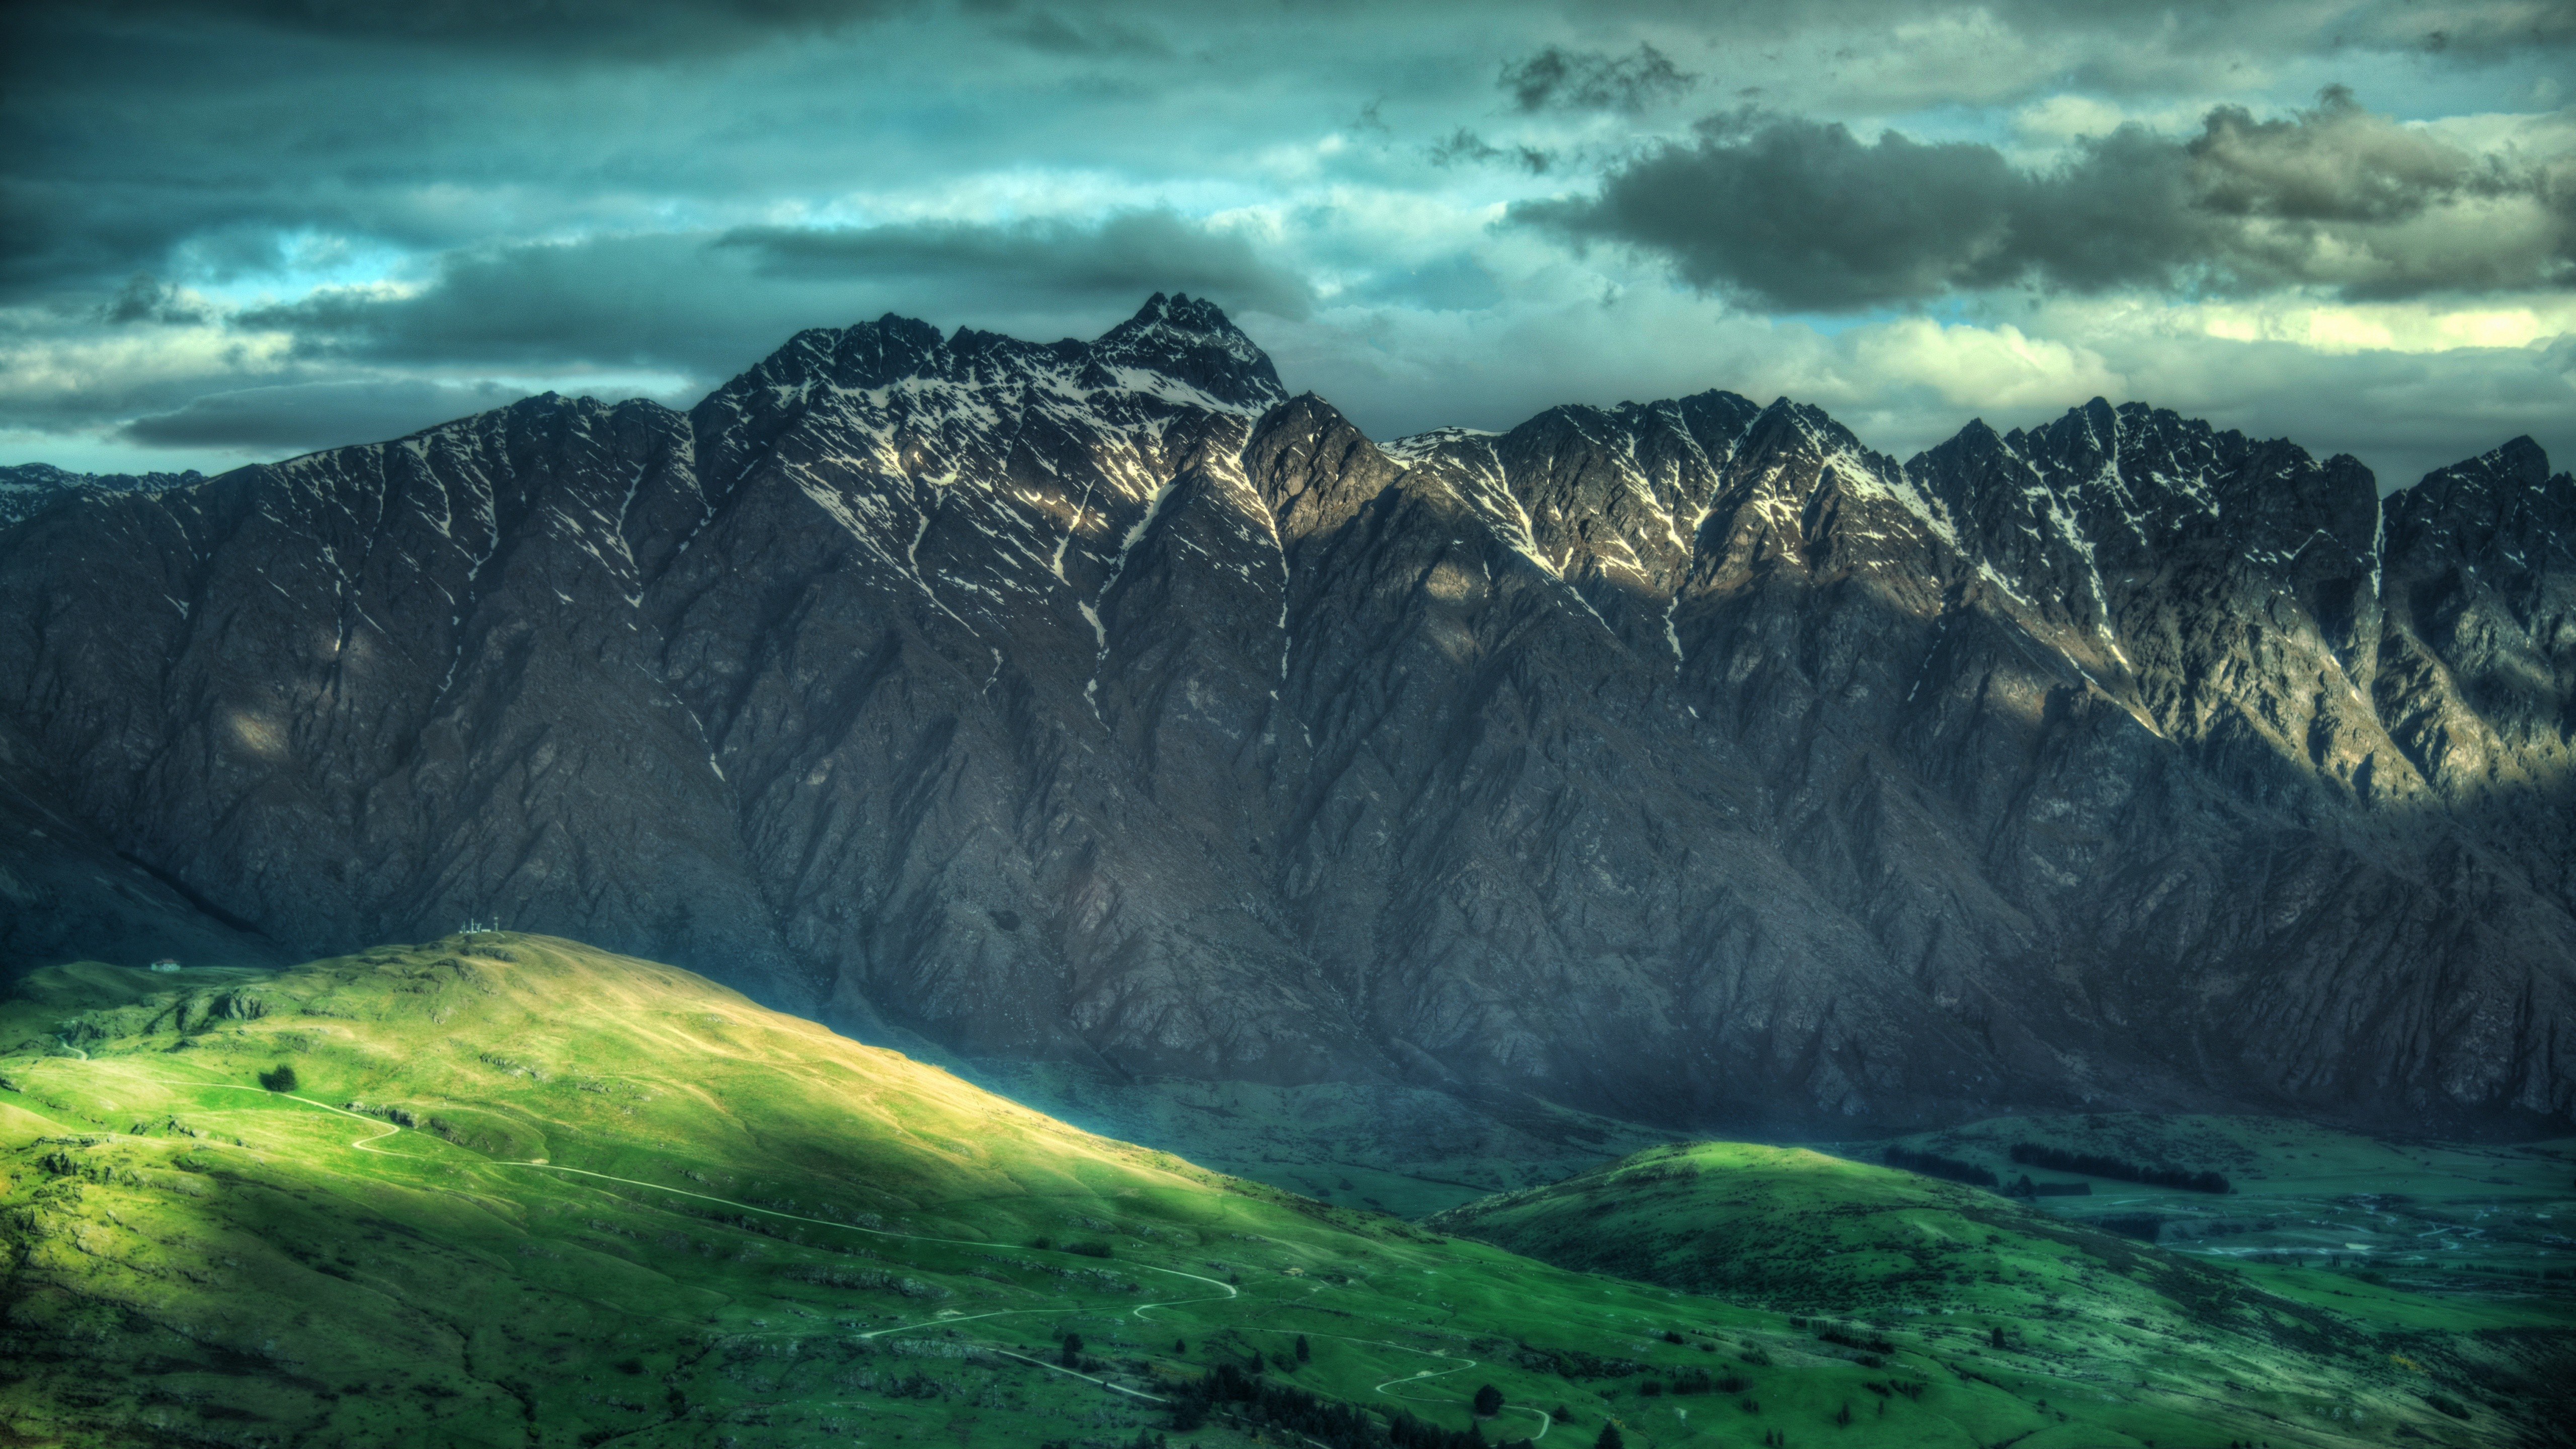 Điểm đến New Zealand hấp dẫn với khung cảnh núi non tuyệt đẹp, đảo tràn đầy màu sắc tự nhiên. Hãy ngắm nhìn những hình ảnh nền desktop 8k của New Zealand và cảm nhận sự hoang sơ, độc đáo chỉ có tại đất nước này.